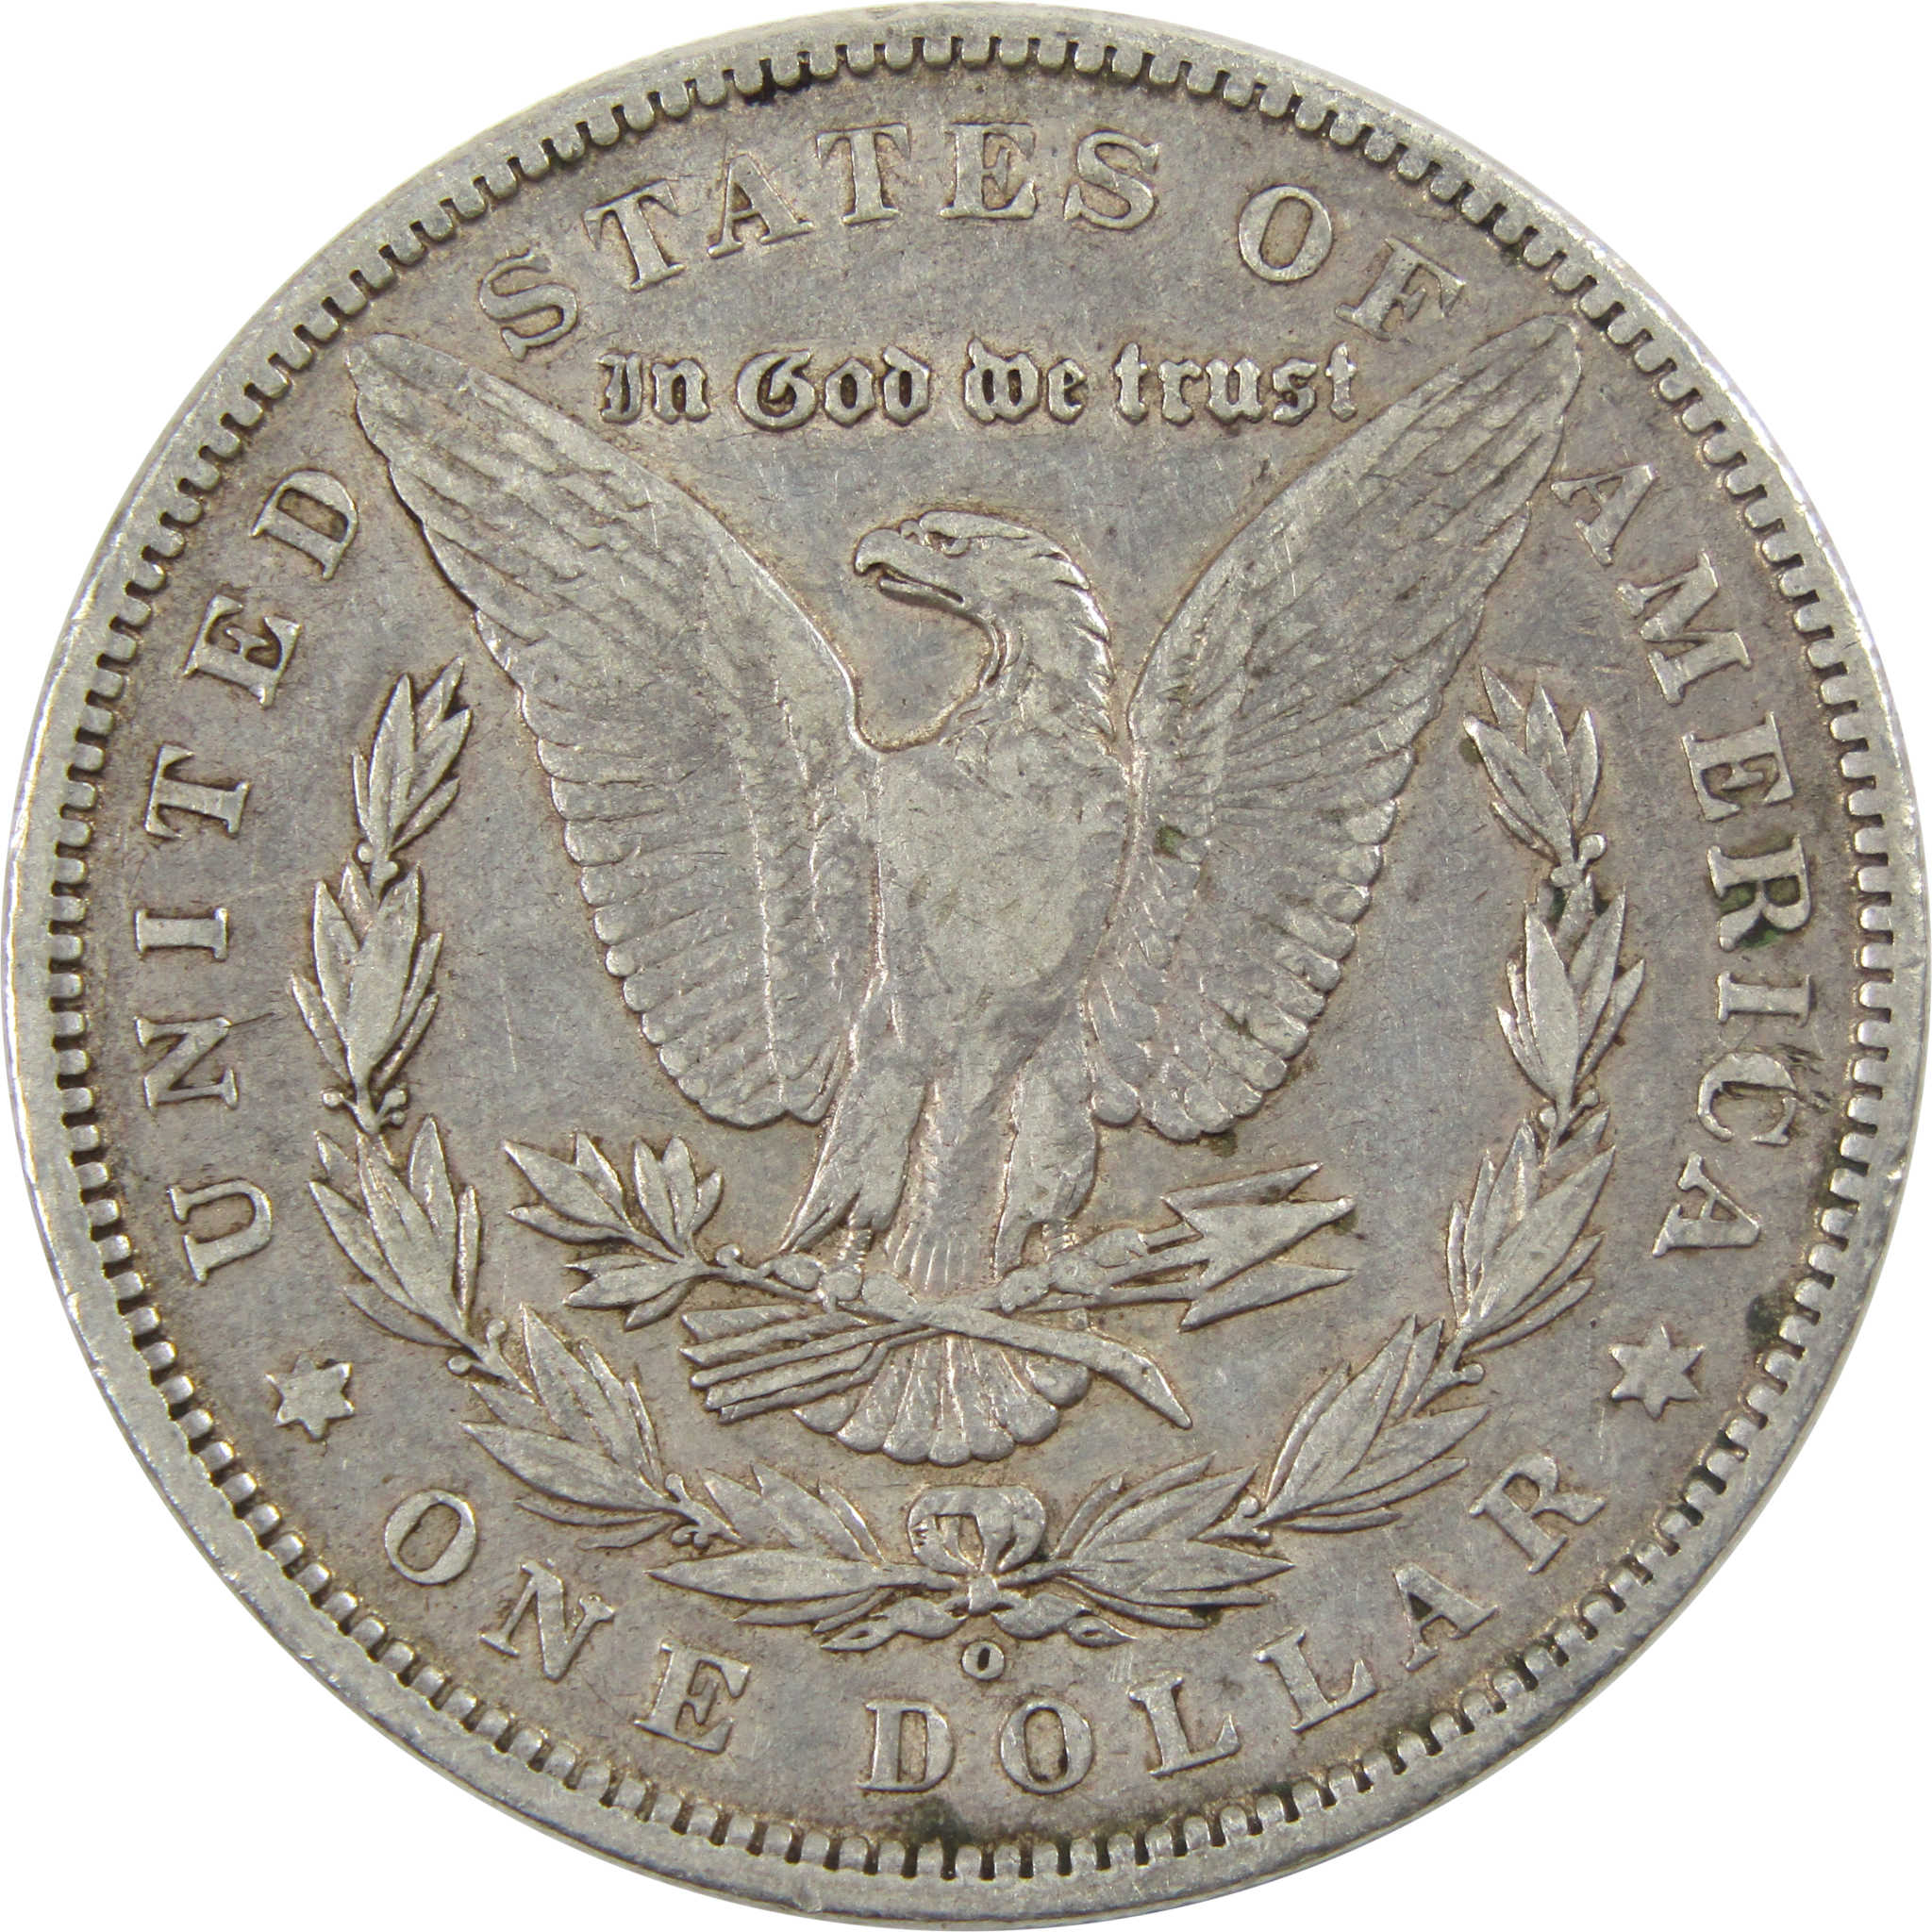 1899 O Micro O Morgan Dollar VF Very Fine 90% Silver $1 Coin SKU:I5942 - Morgan coin - Morgan silver dollar - Morgan silver dollar for sale - Profile Coins &amp; Collectibles